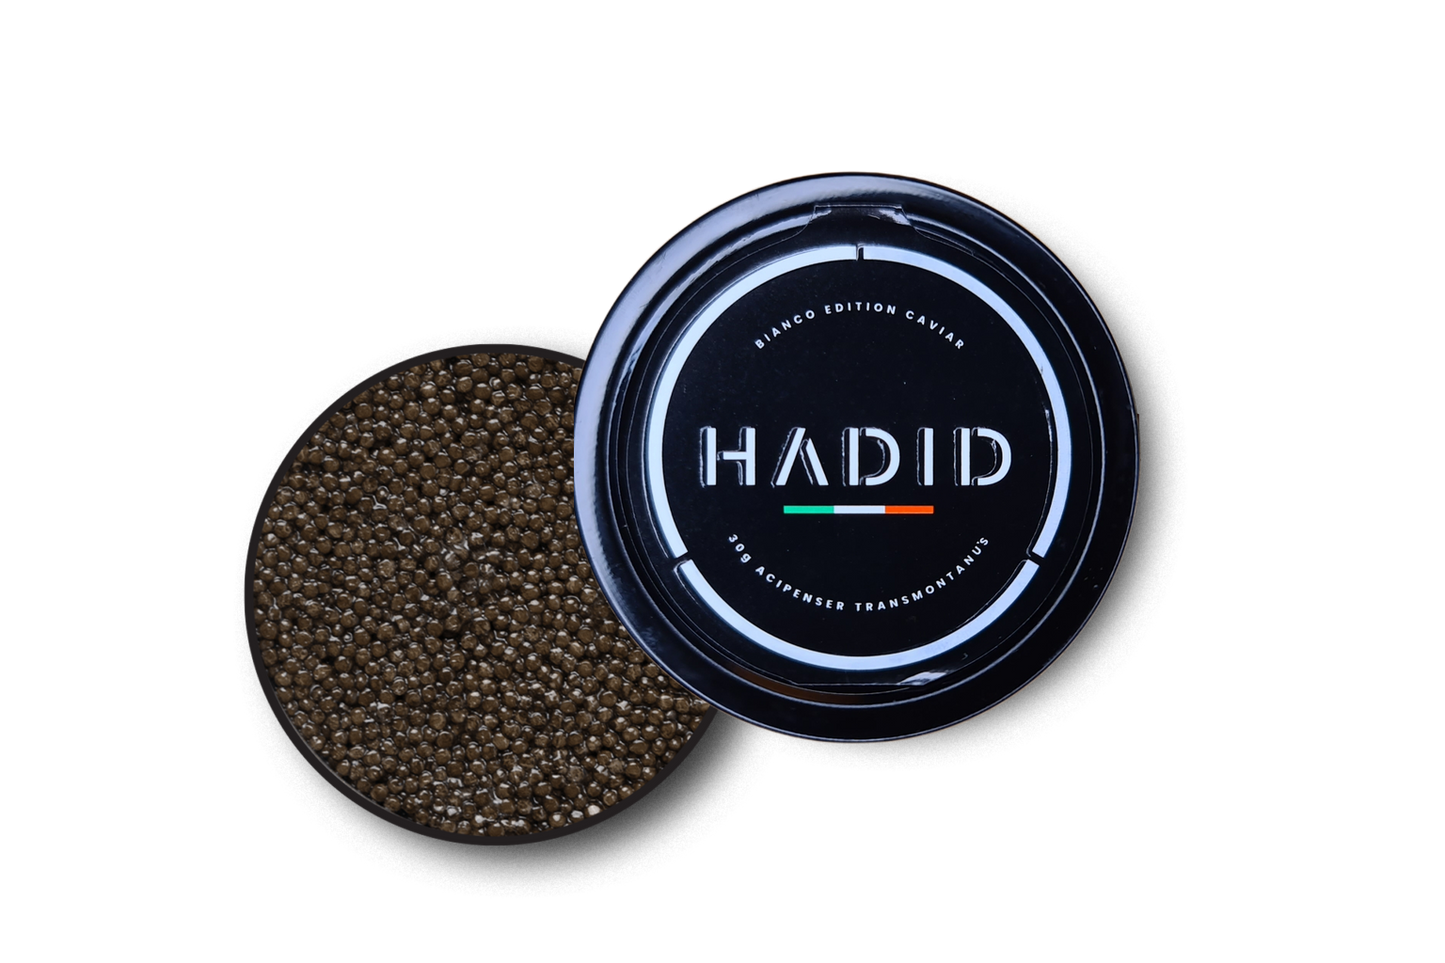 HADID Caviar Bianco Edition (White Sturgeon)